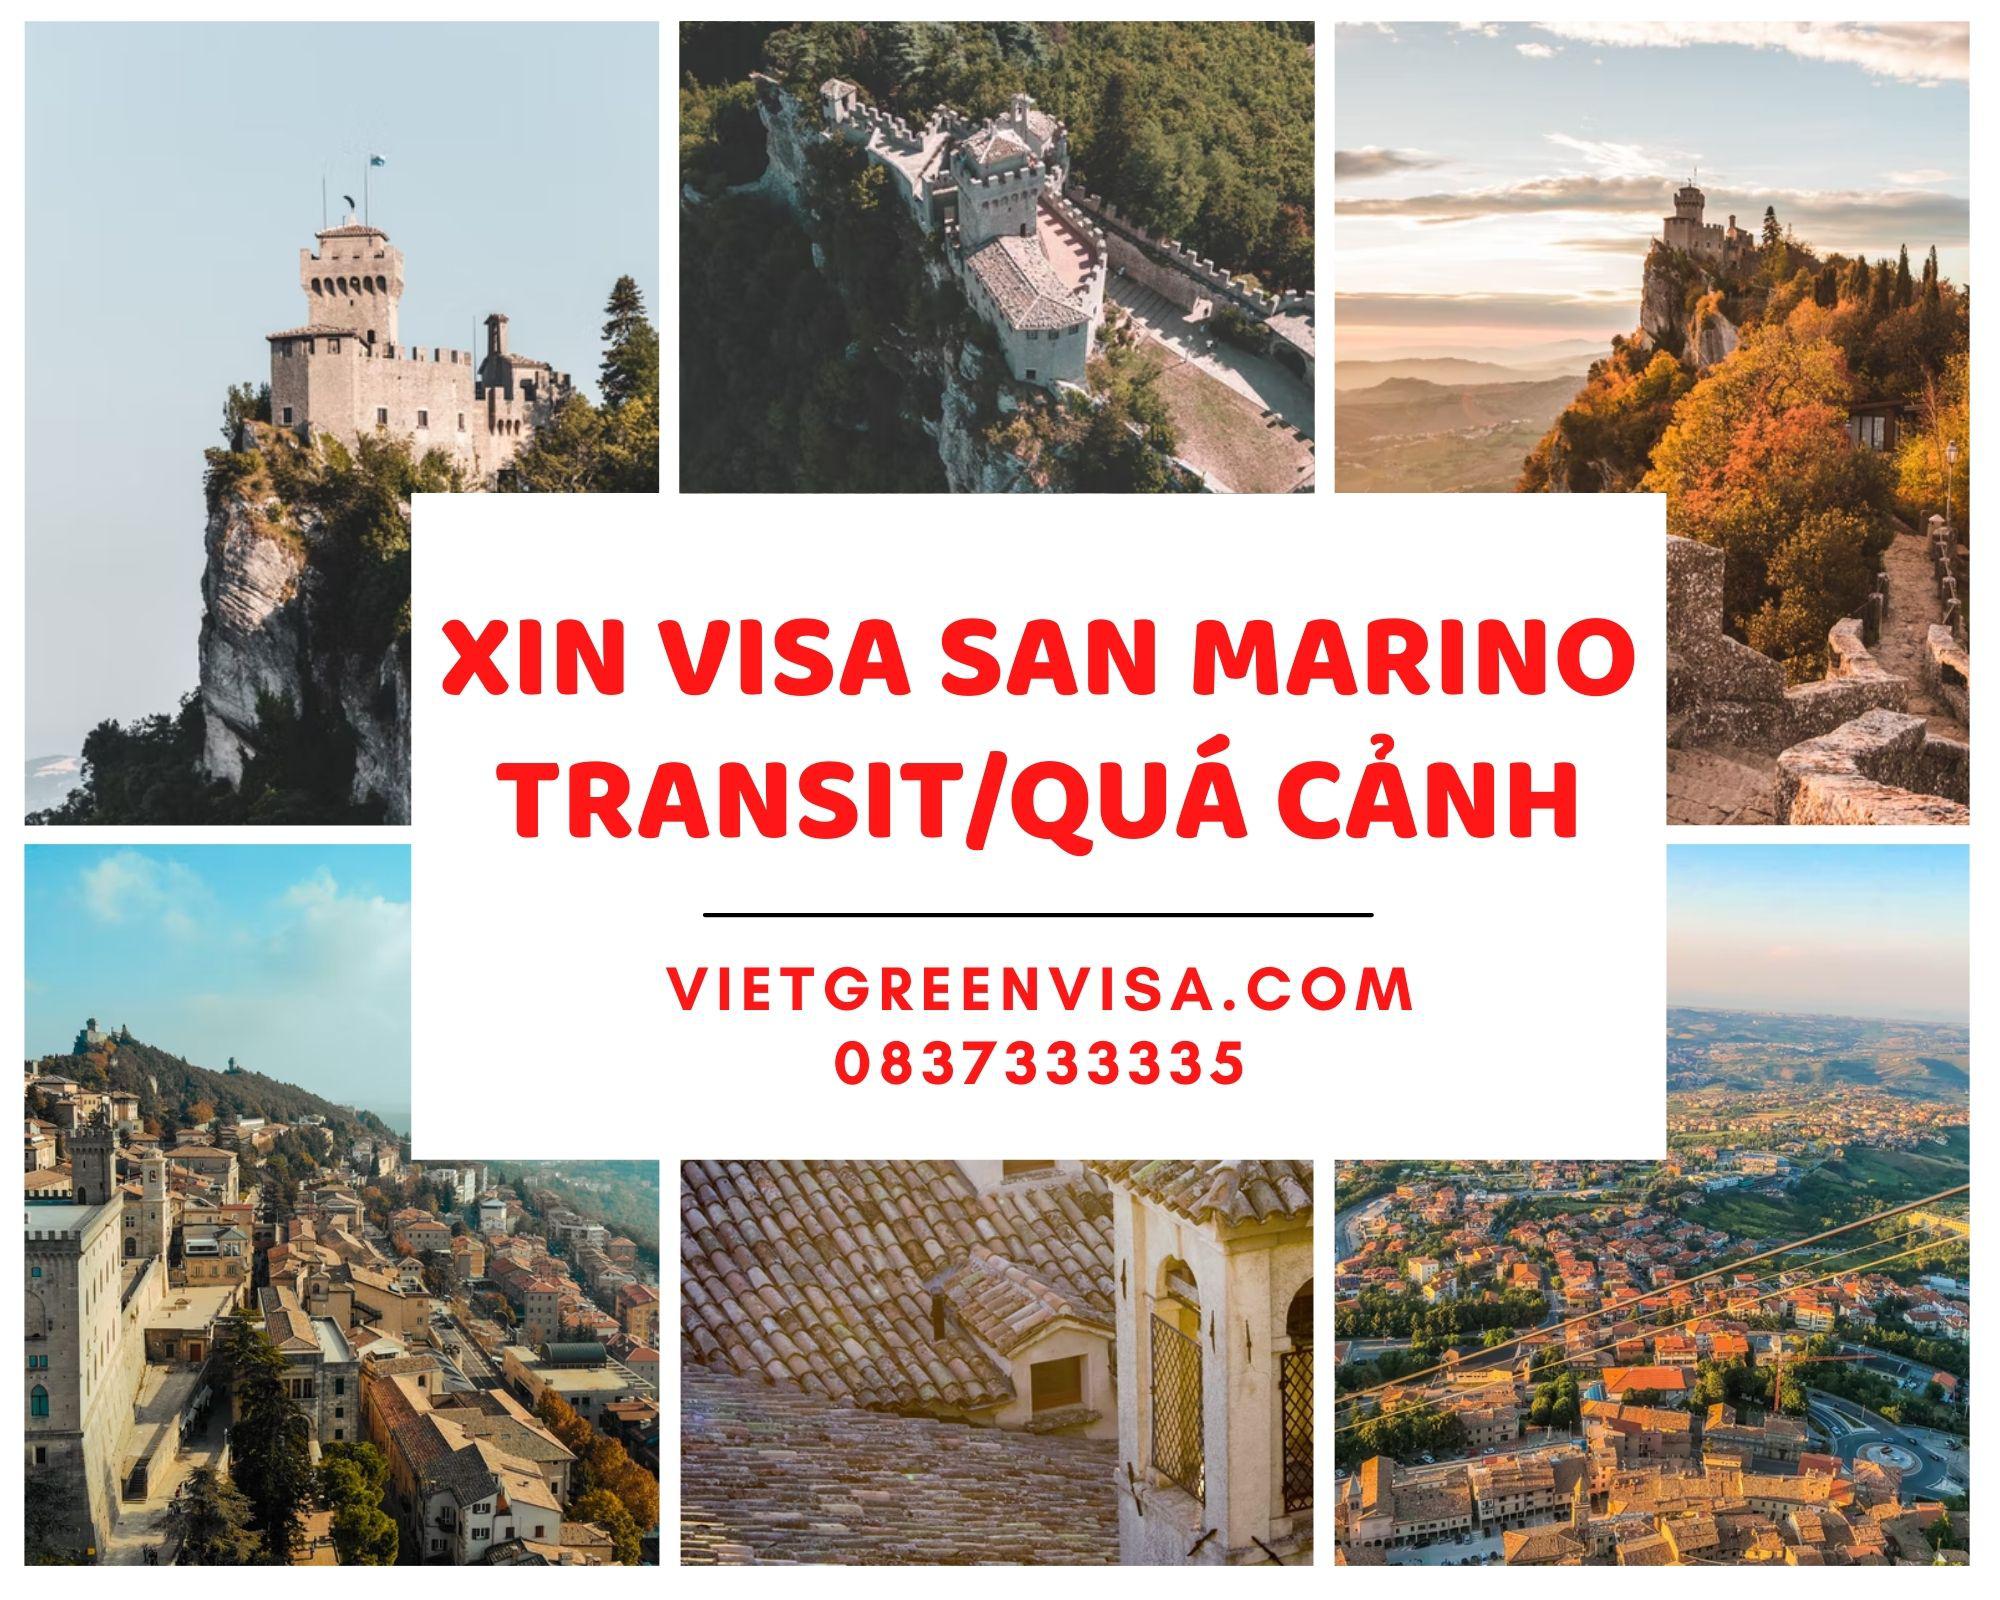 Dịch vụ visa quá cảnh/transit  qua San Marino 